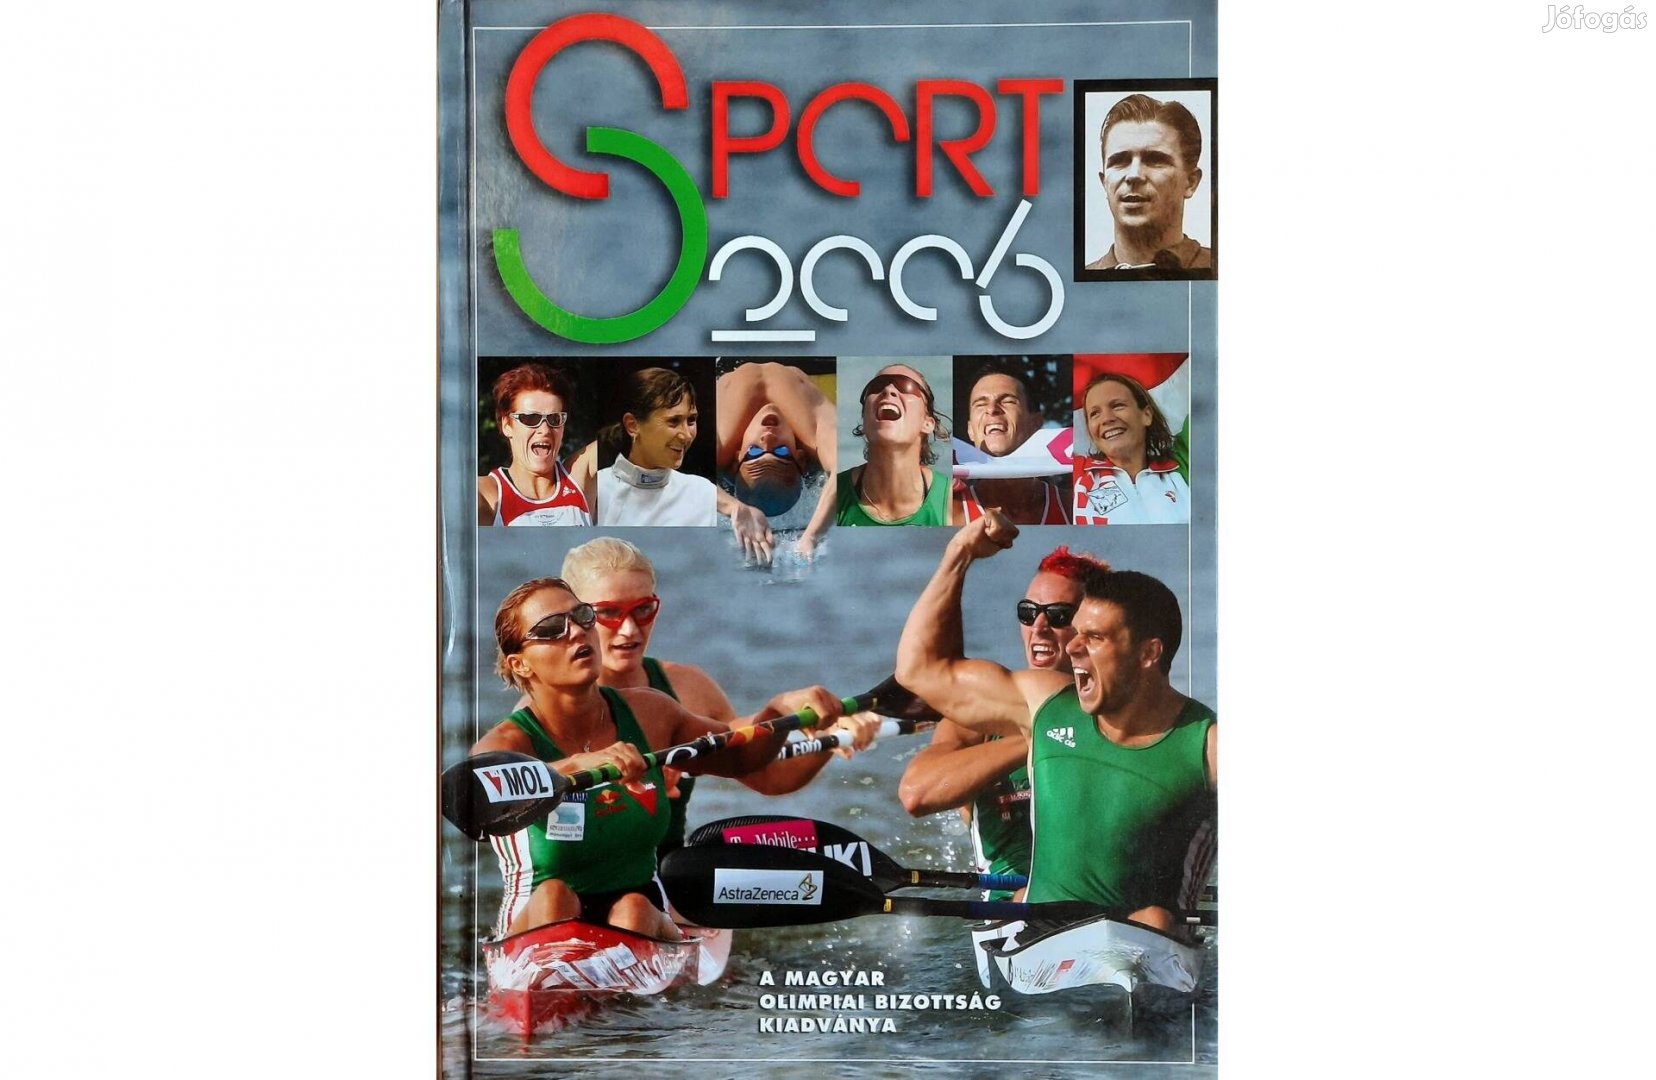 Sport 2006 című könyv eladó